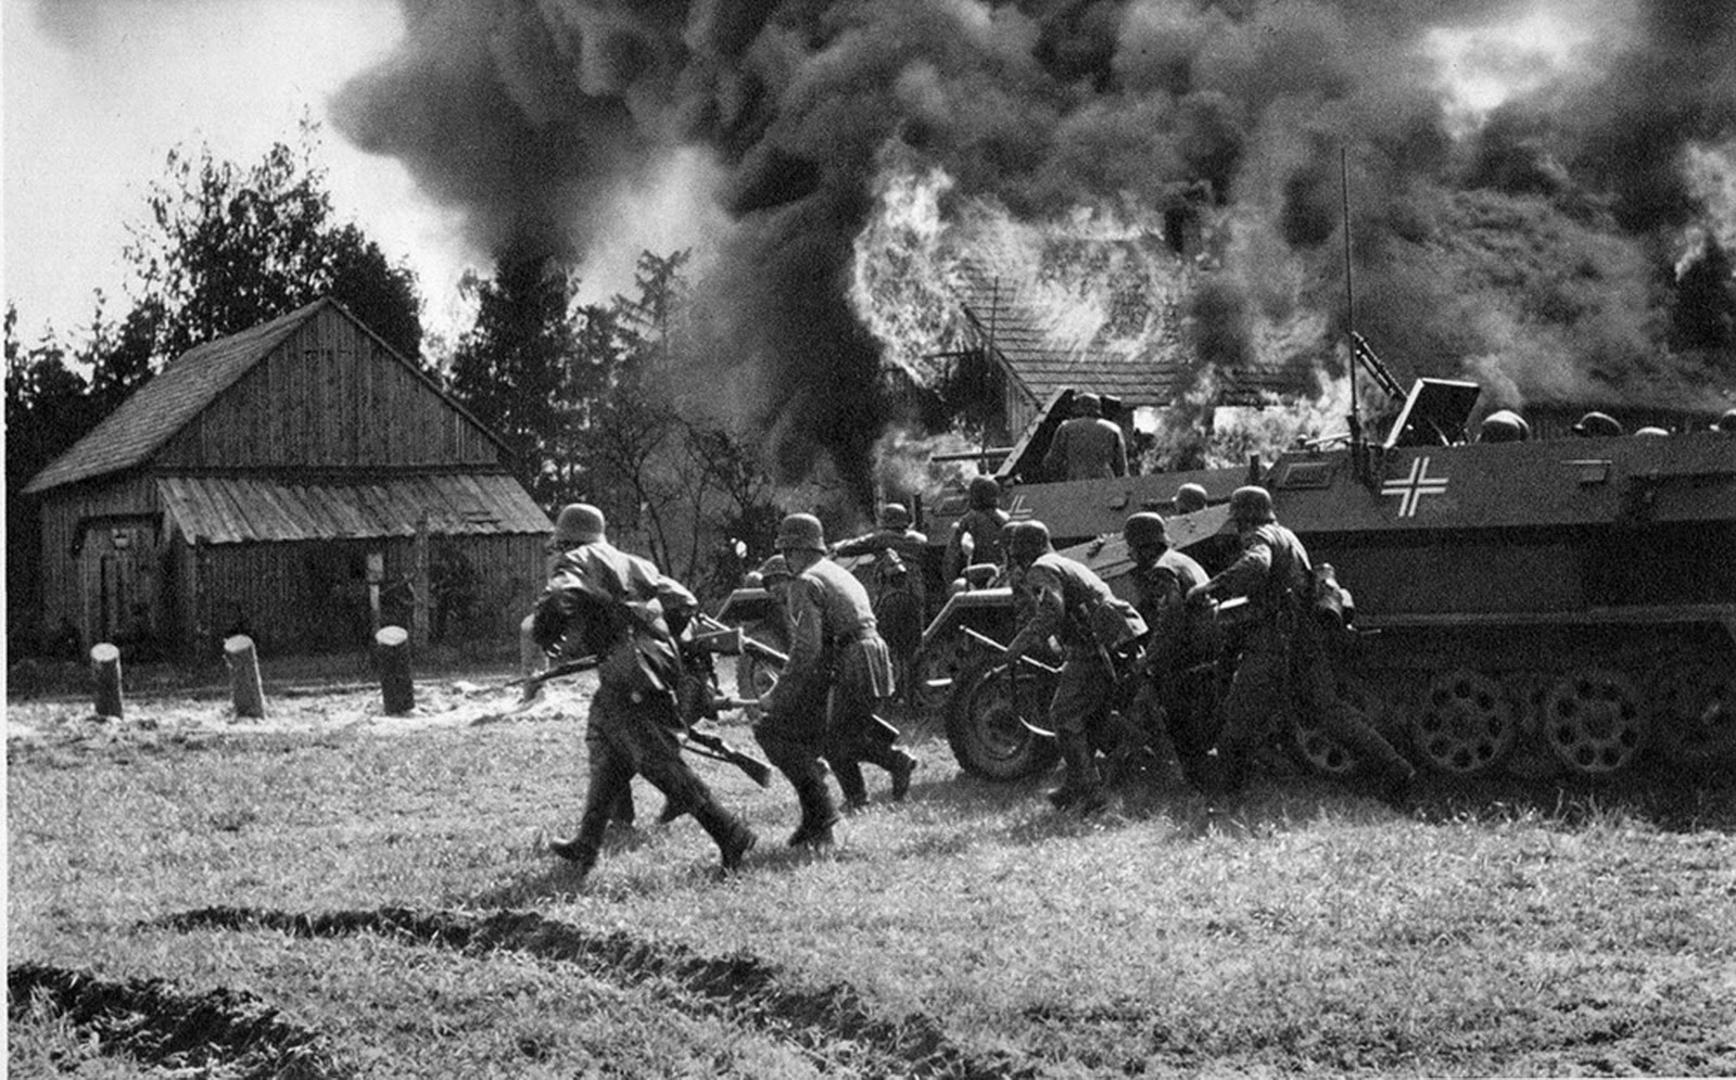 22 июня 1945 г. Вторжение Германии в Польшу 1 сентября 1939. Нападение третьего рейха на Польшу.